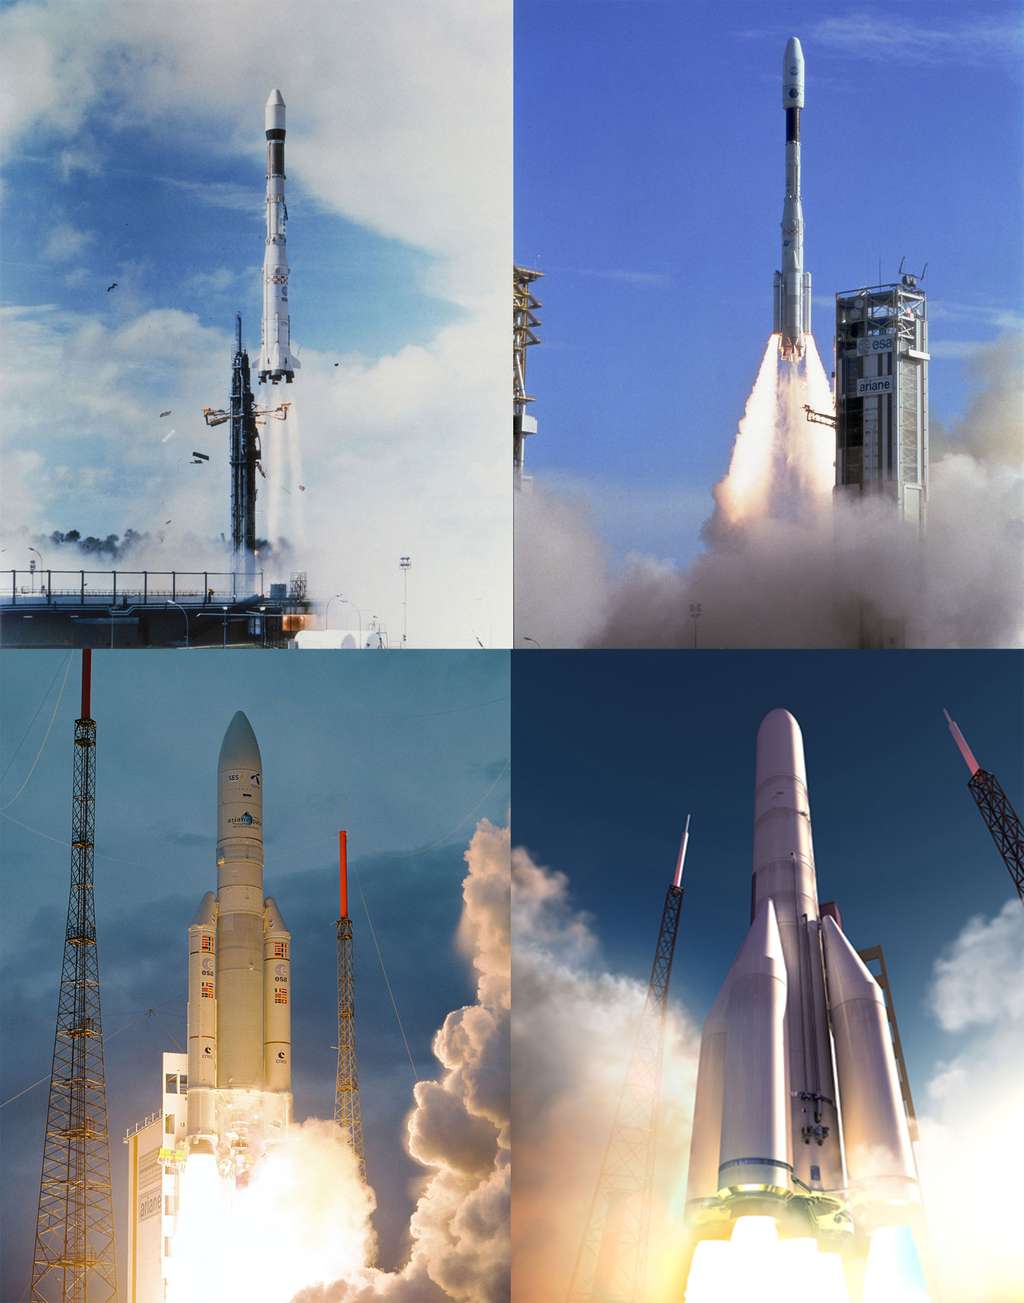 D'Ariane 1 à Ariane 5 et d'Ariane 3 à Ariane 4, le moteur HM7 aura équipé tous les étages supérieurs des lanceurs de la famille Ariane. Demain, ce moteur historique sera remplacé par le moteur Vinci. © CSG, Arianespace, ESA